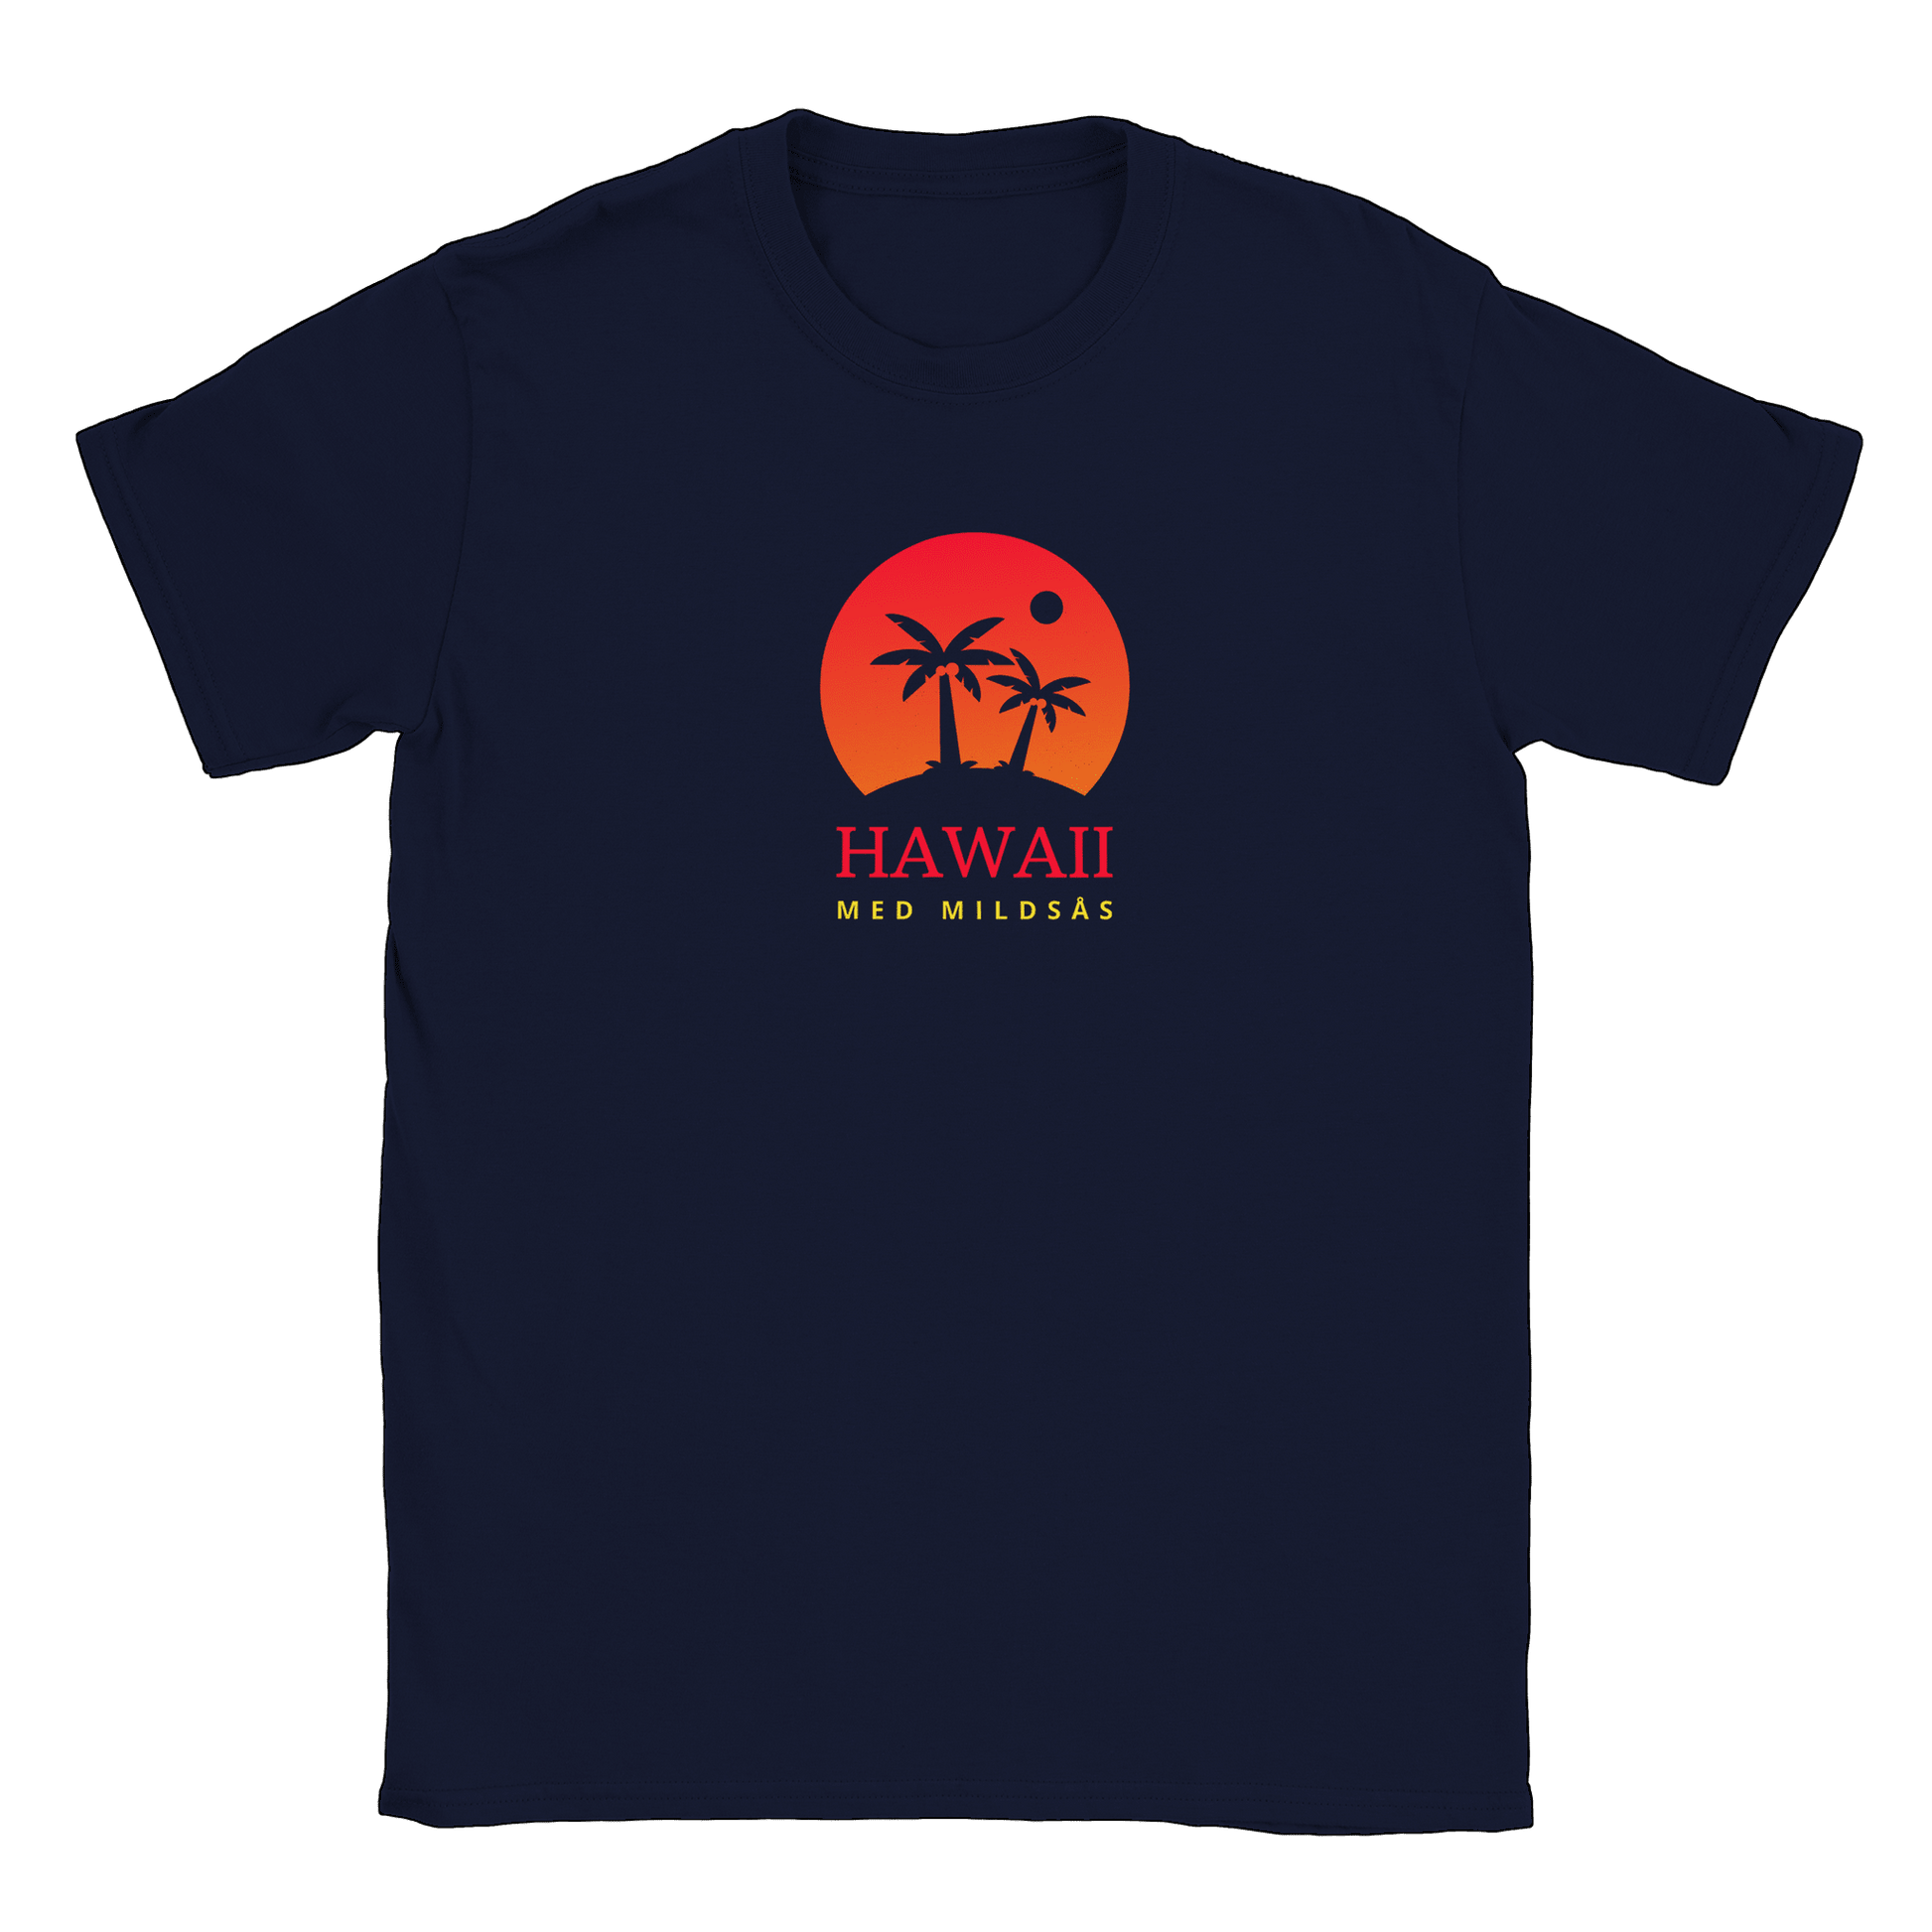 Hawaii med mildsås - T-shirt Navy